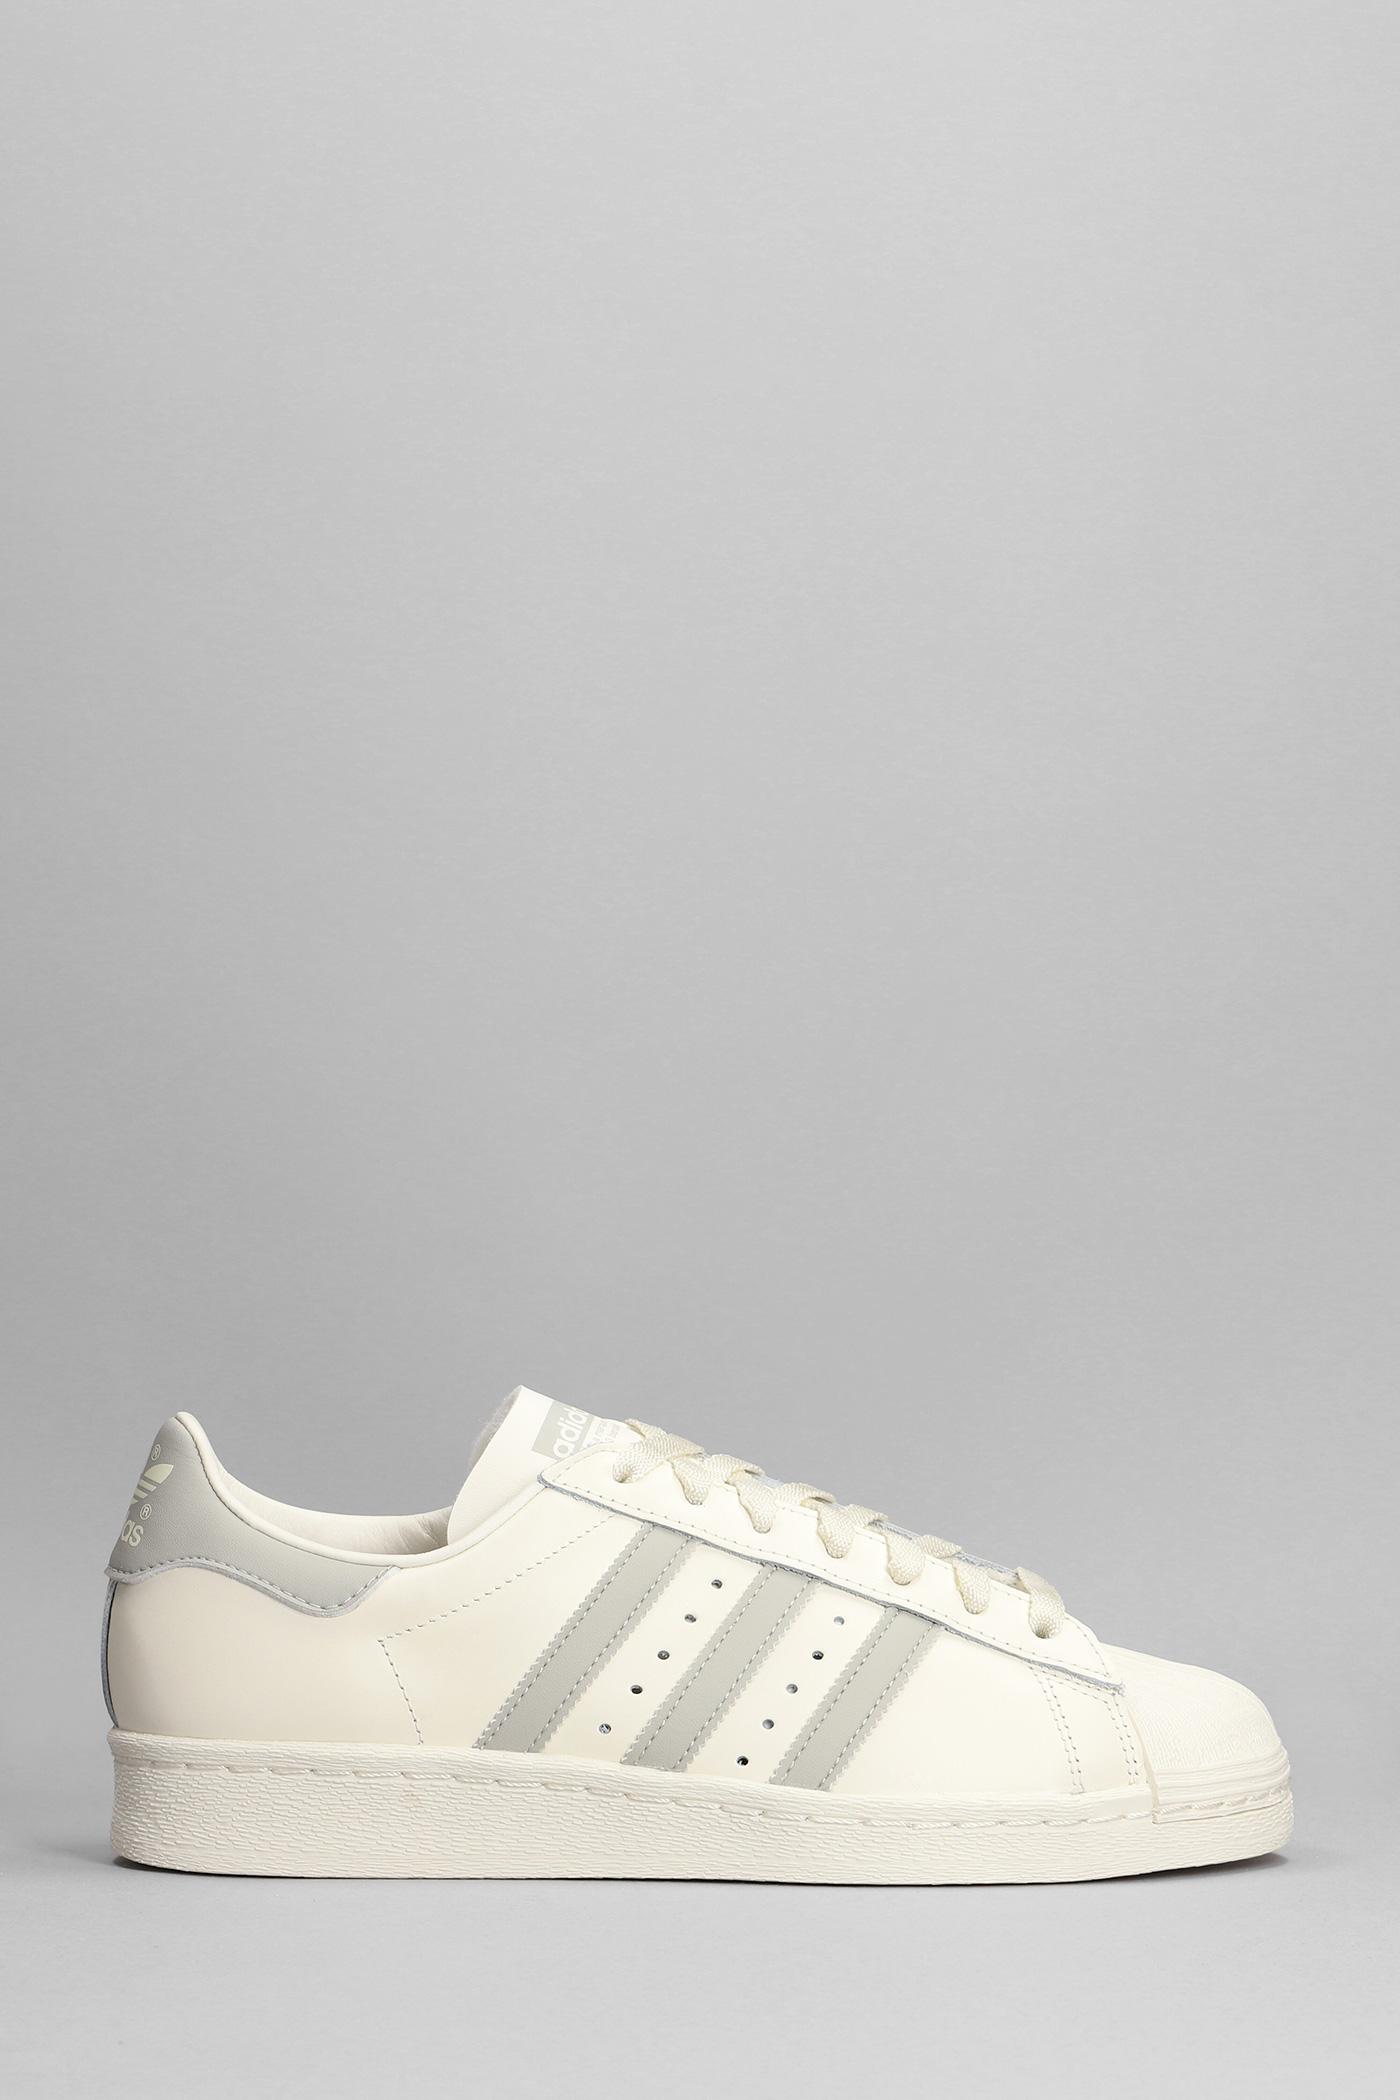 adidas Superstar '82 sneaker  CLOUD WHITE/DARK GREEN/OFF WHITE